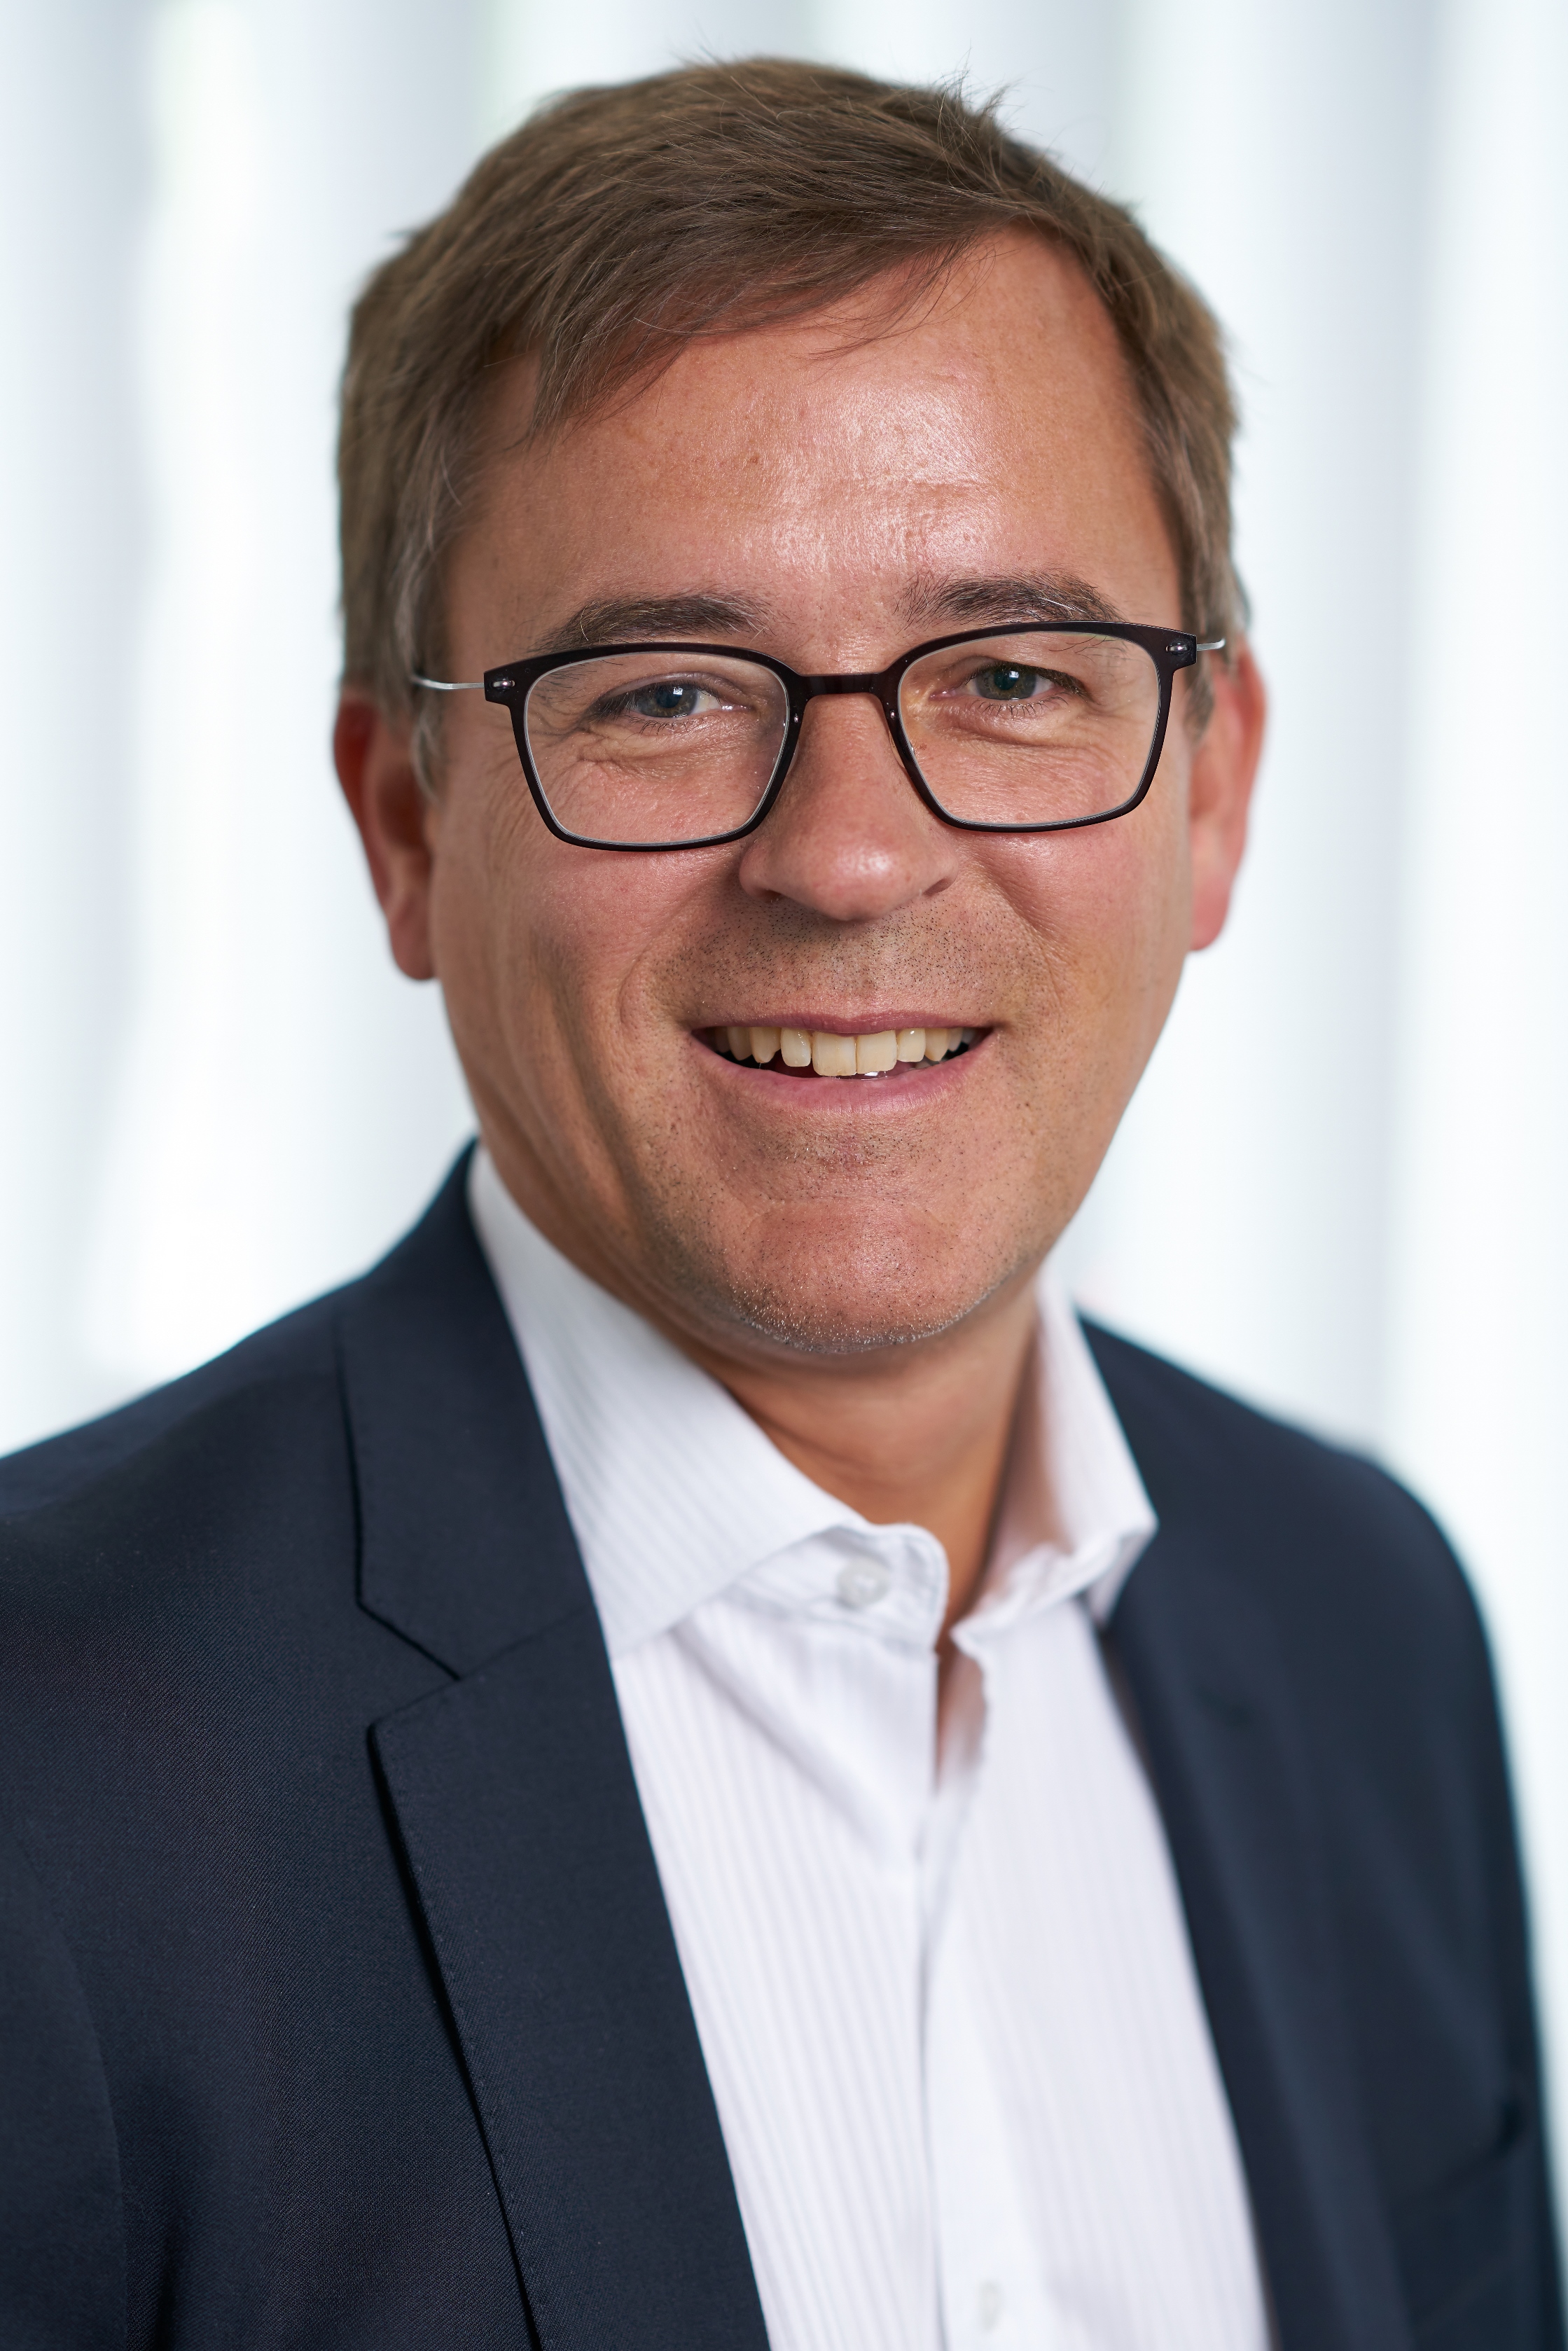 Prof. Dr. Andreas Schmitt, Neurologe und medizinischer Direktor beim US-Biotechunternehmen Biogen